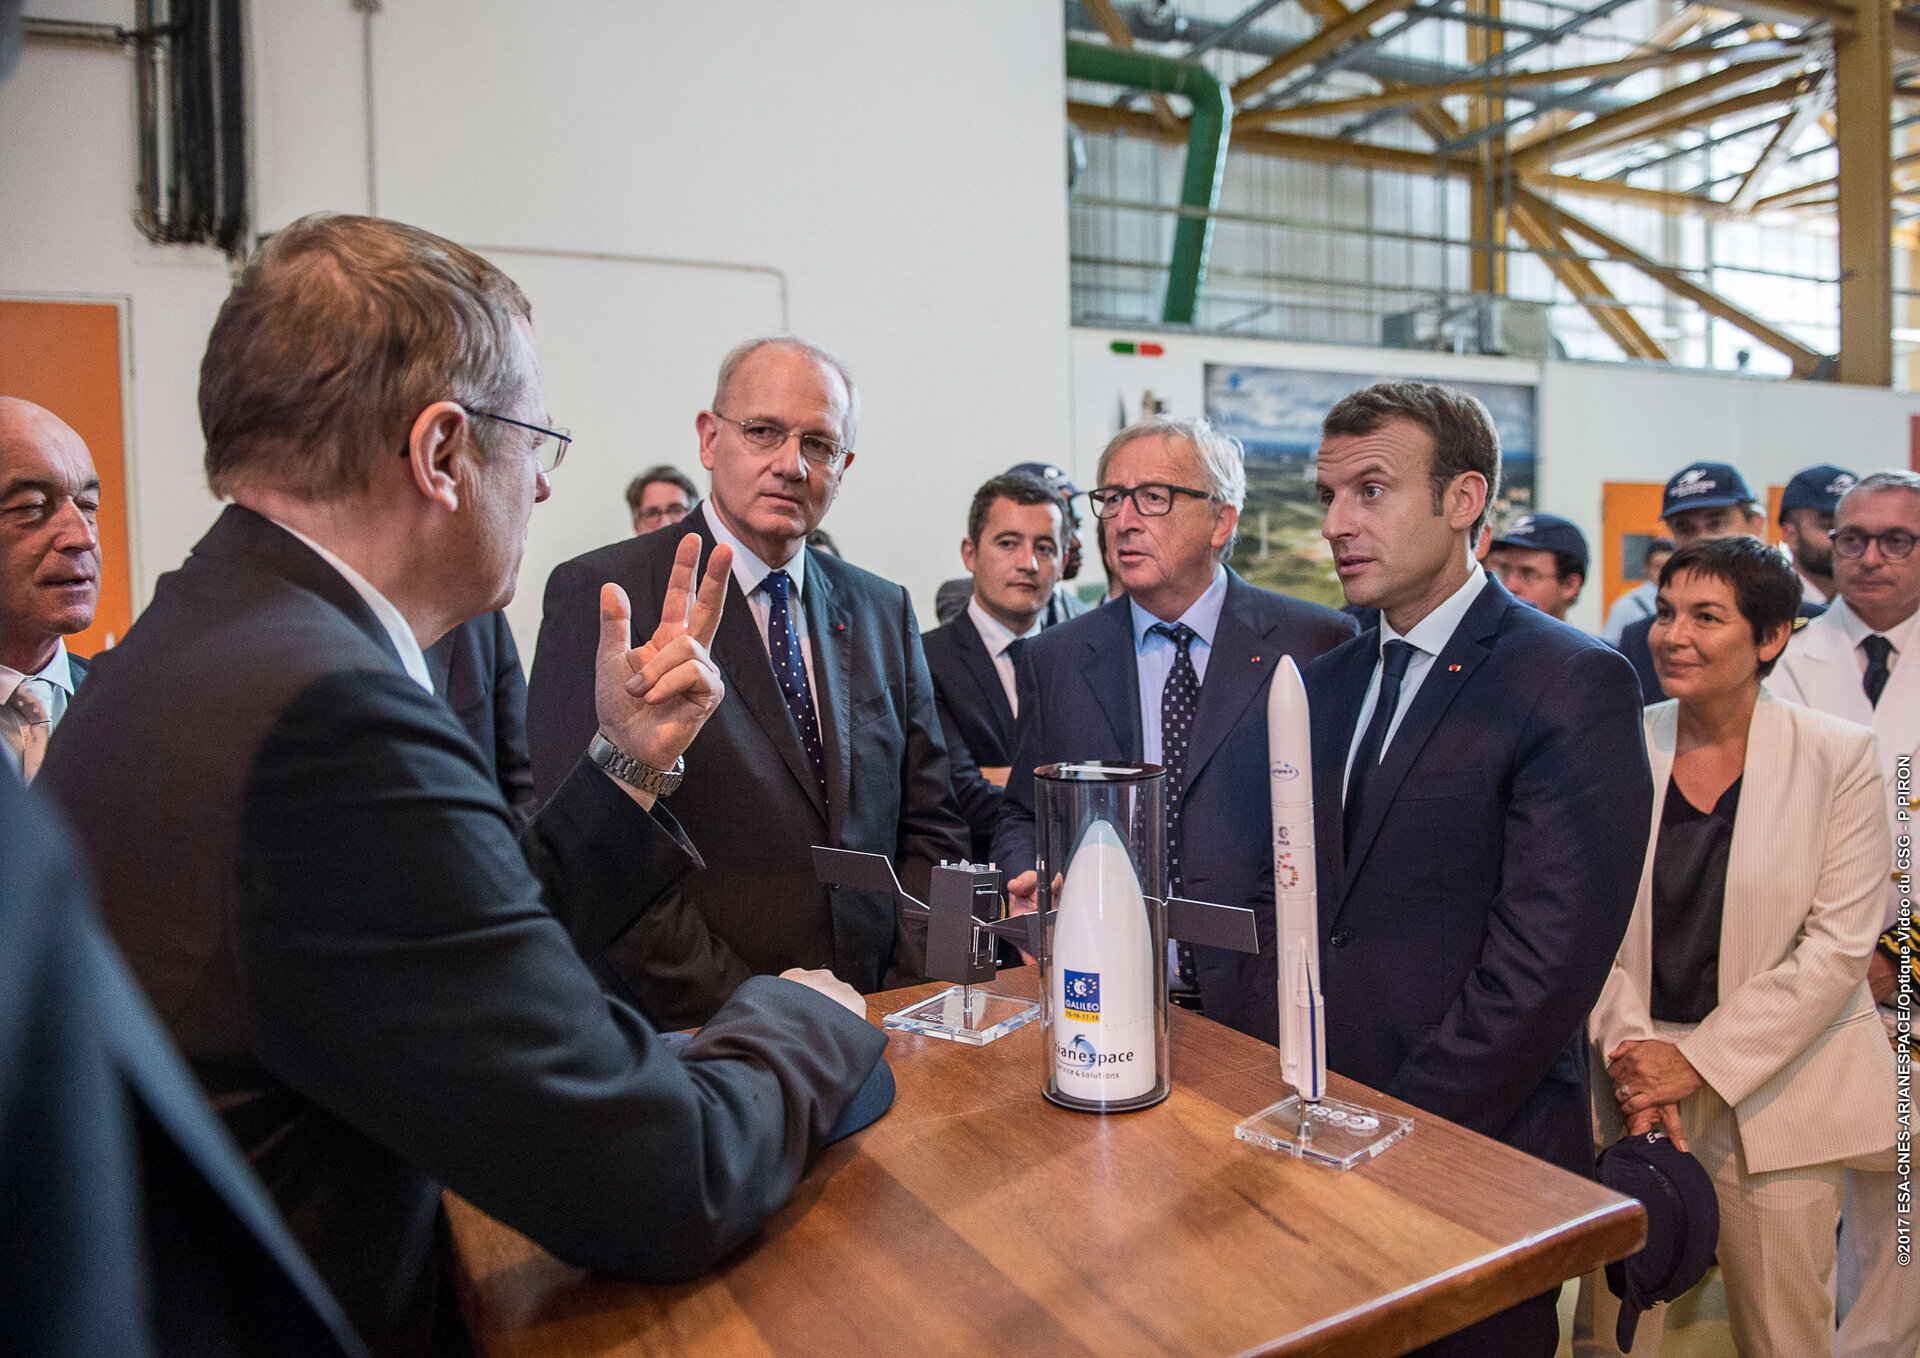 Macron and Juncker visit Europe's Spaceport